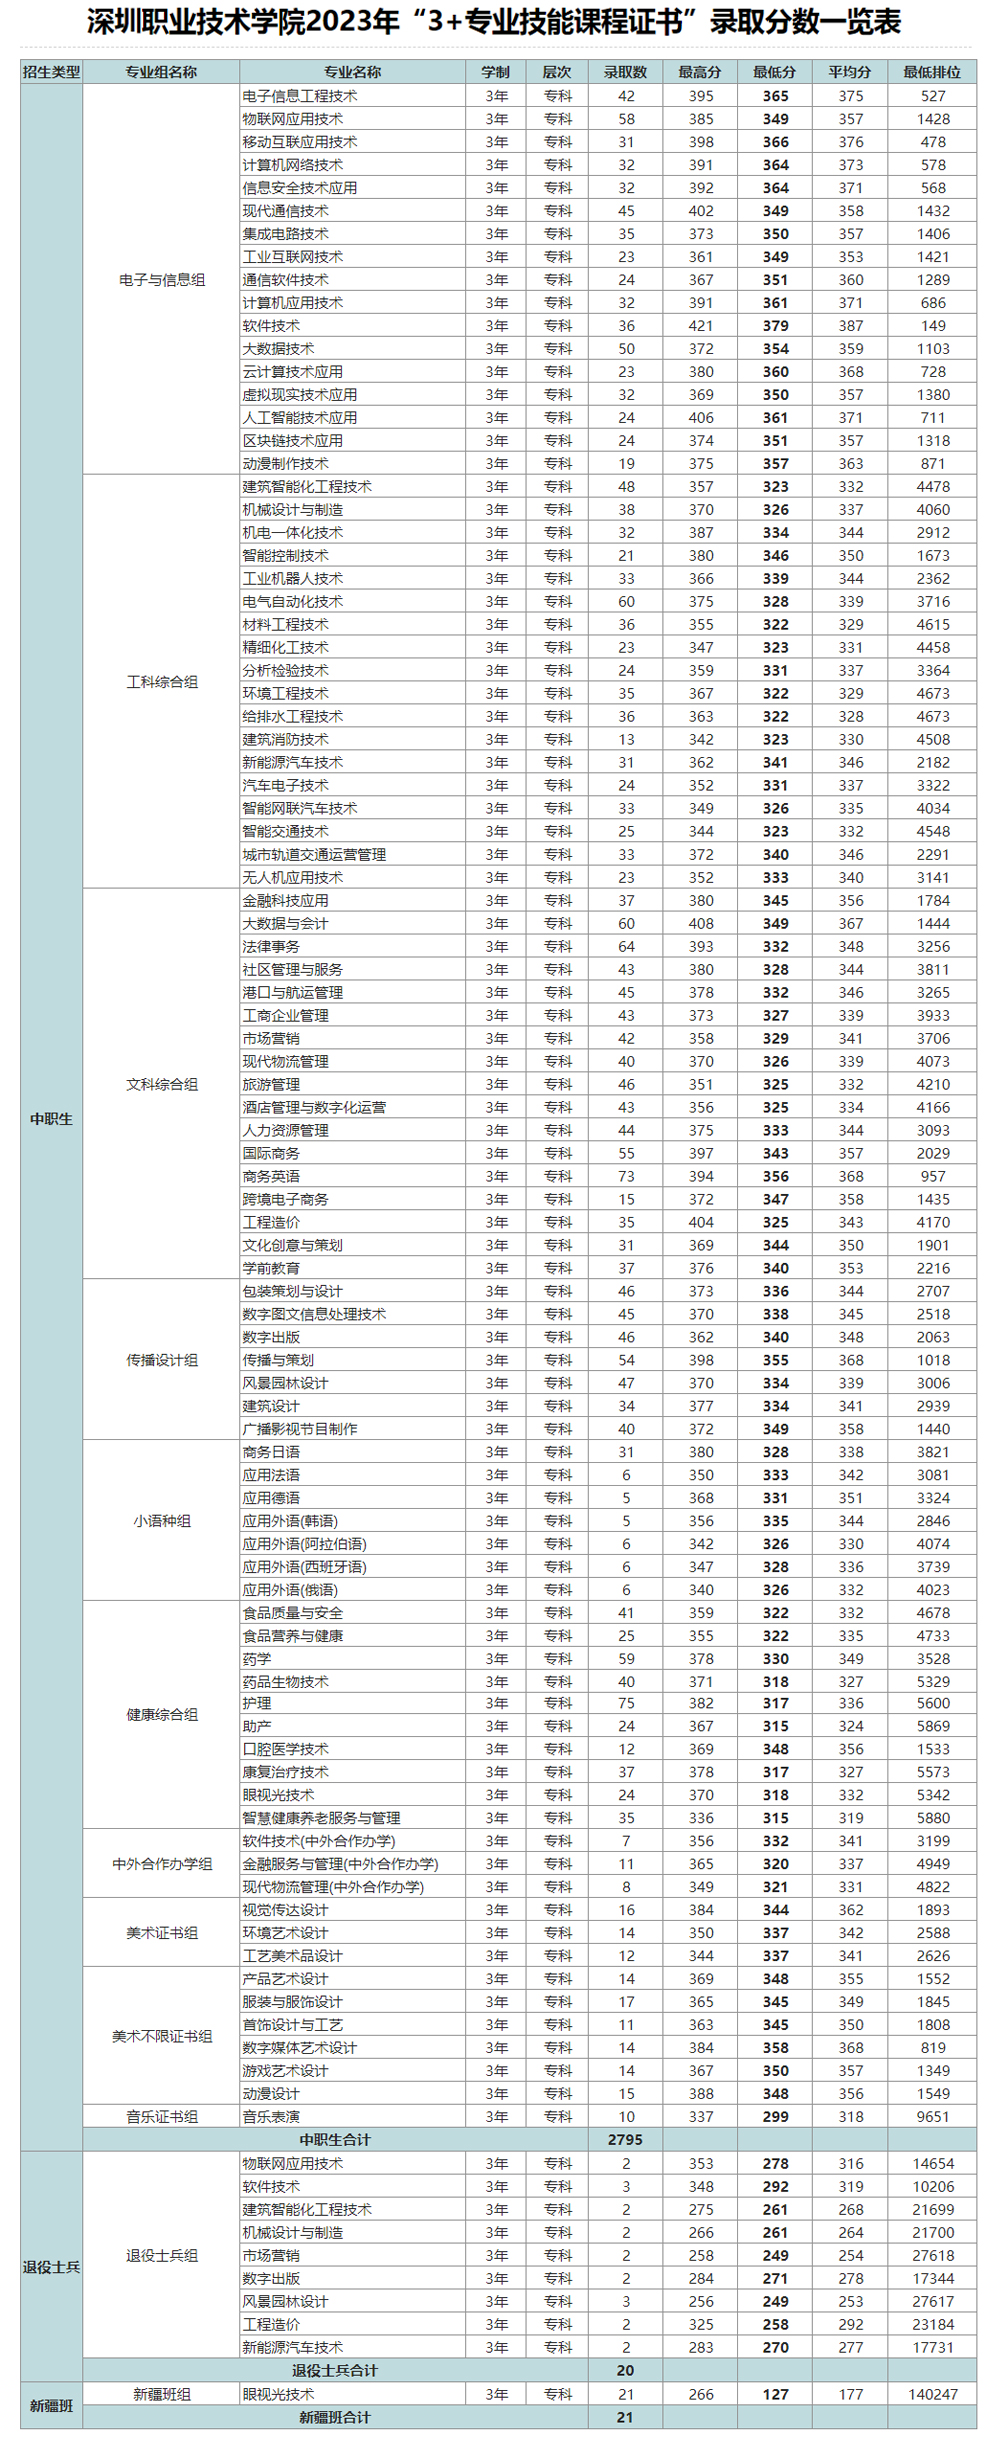 深圳职业技术大学“3+证书”录取分数线